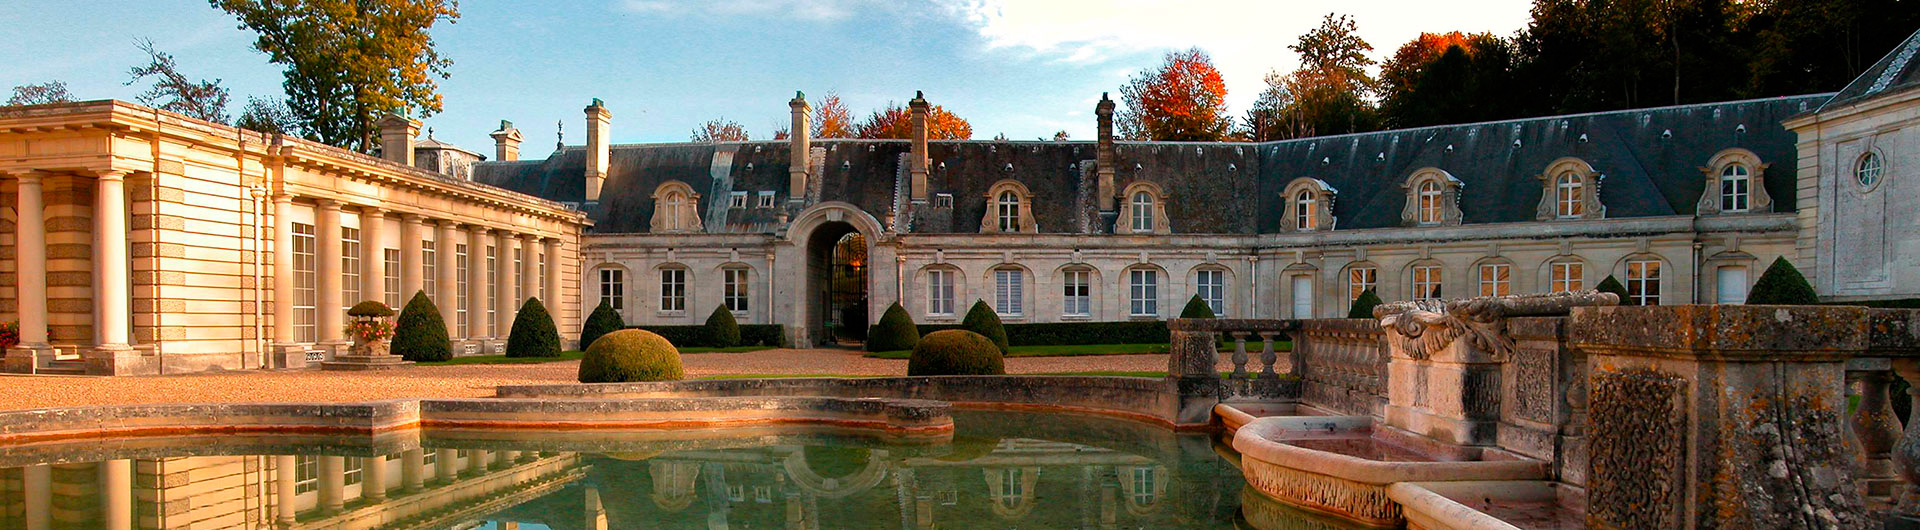 Guided tour of Château de Bizy